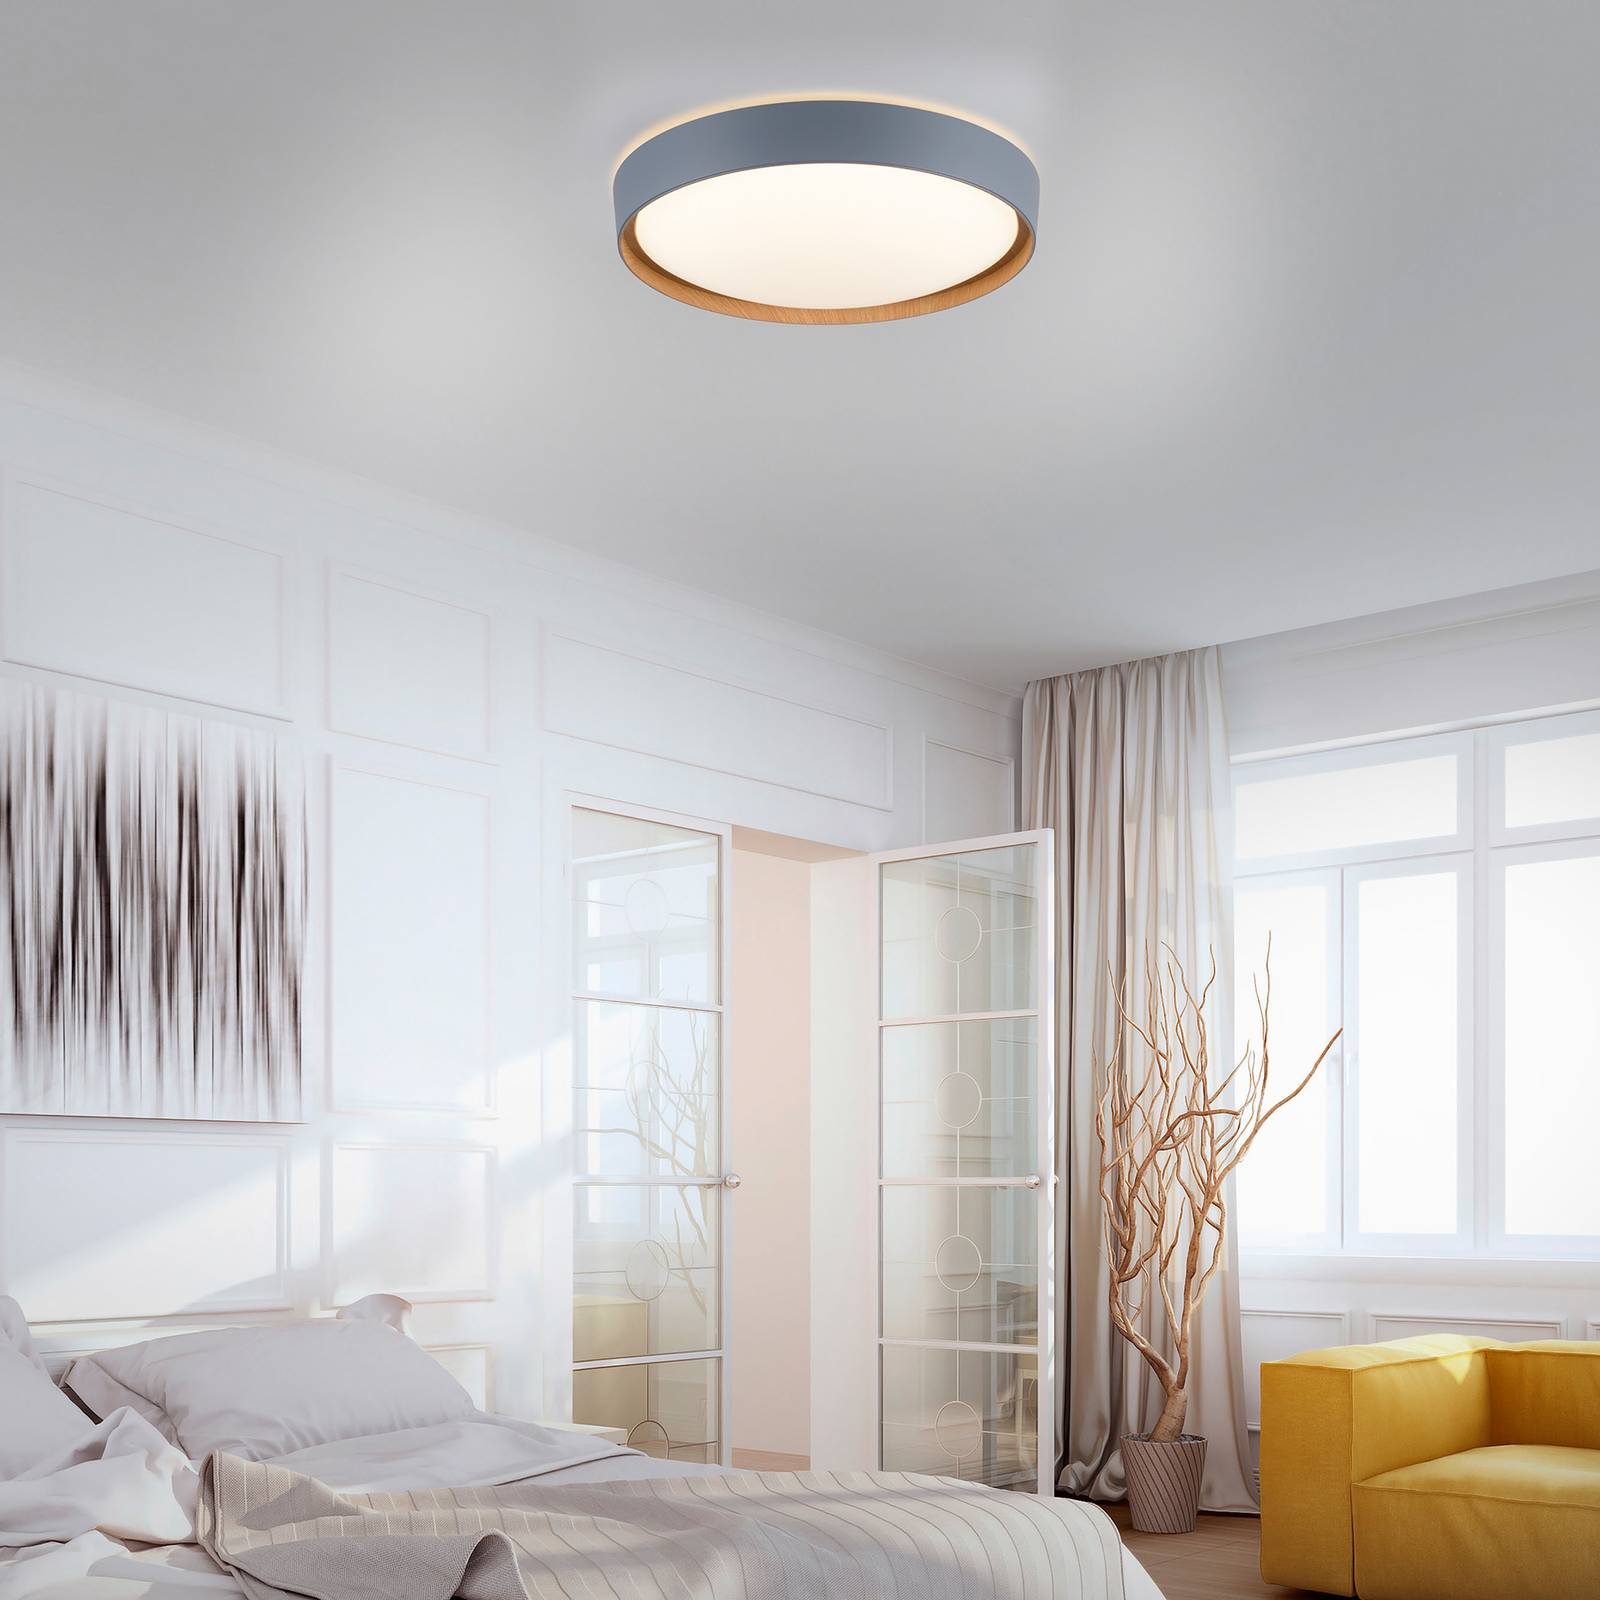 Image of Q-Smart-Home Paul Neuhaus Q-EMILIA plafonnier LED, gris/bois 4012248366530